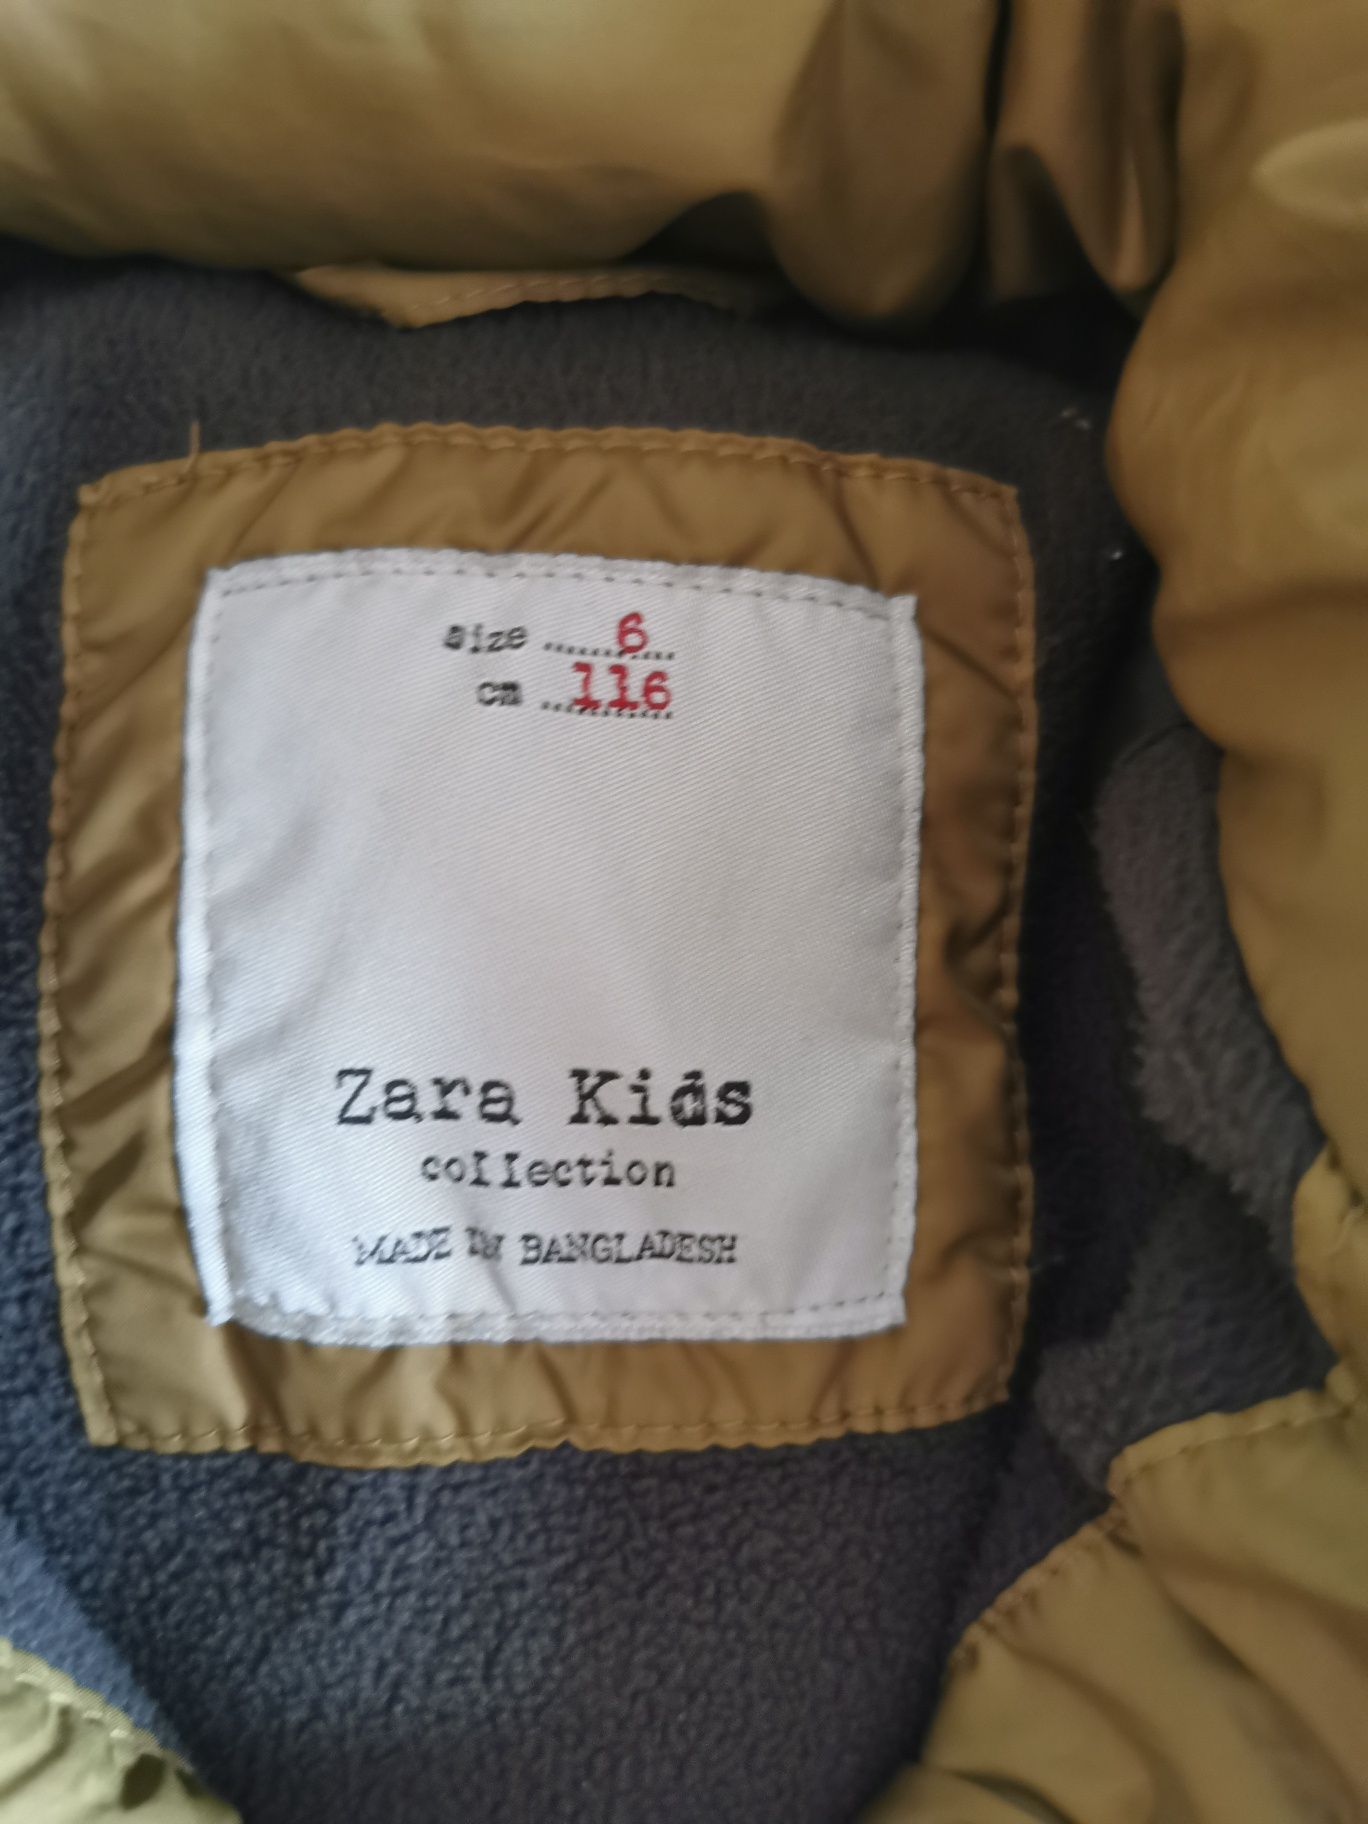 Geacă iarnă Zara Kids băieți, mărimea 116